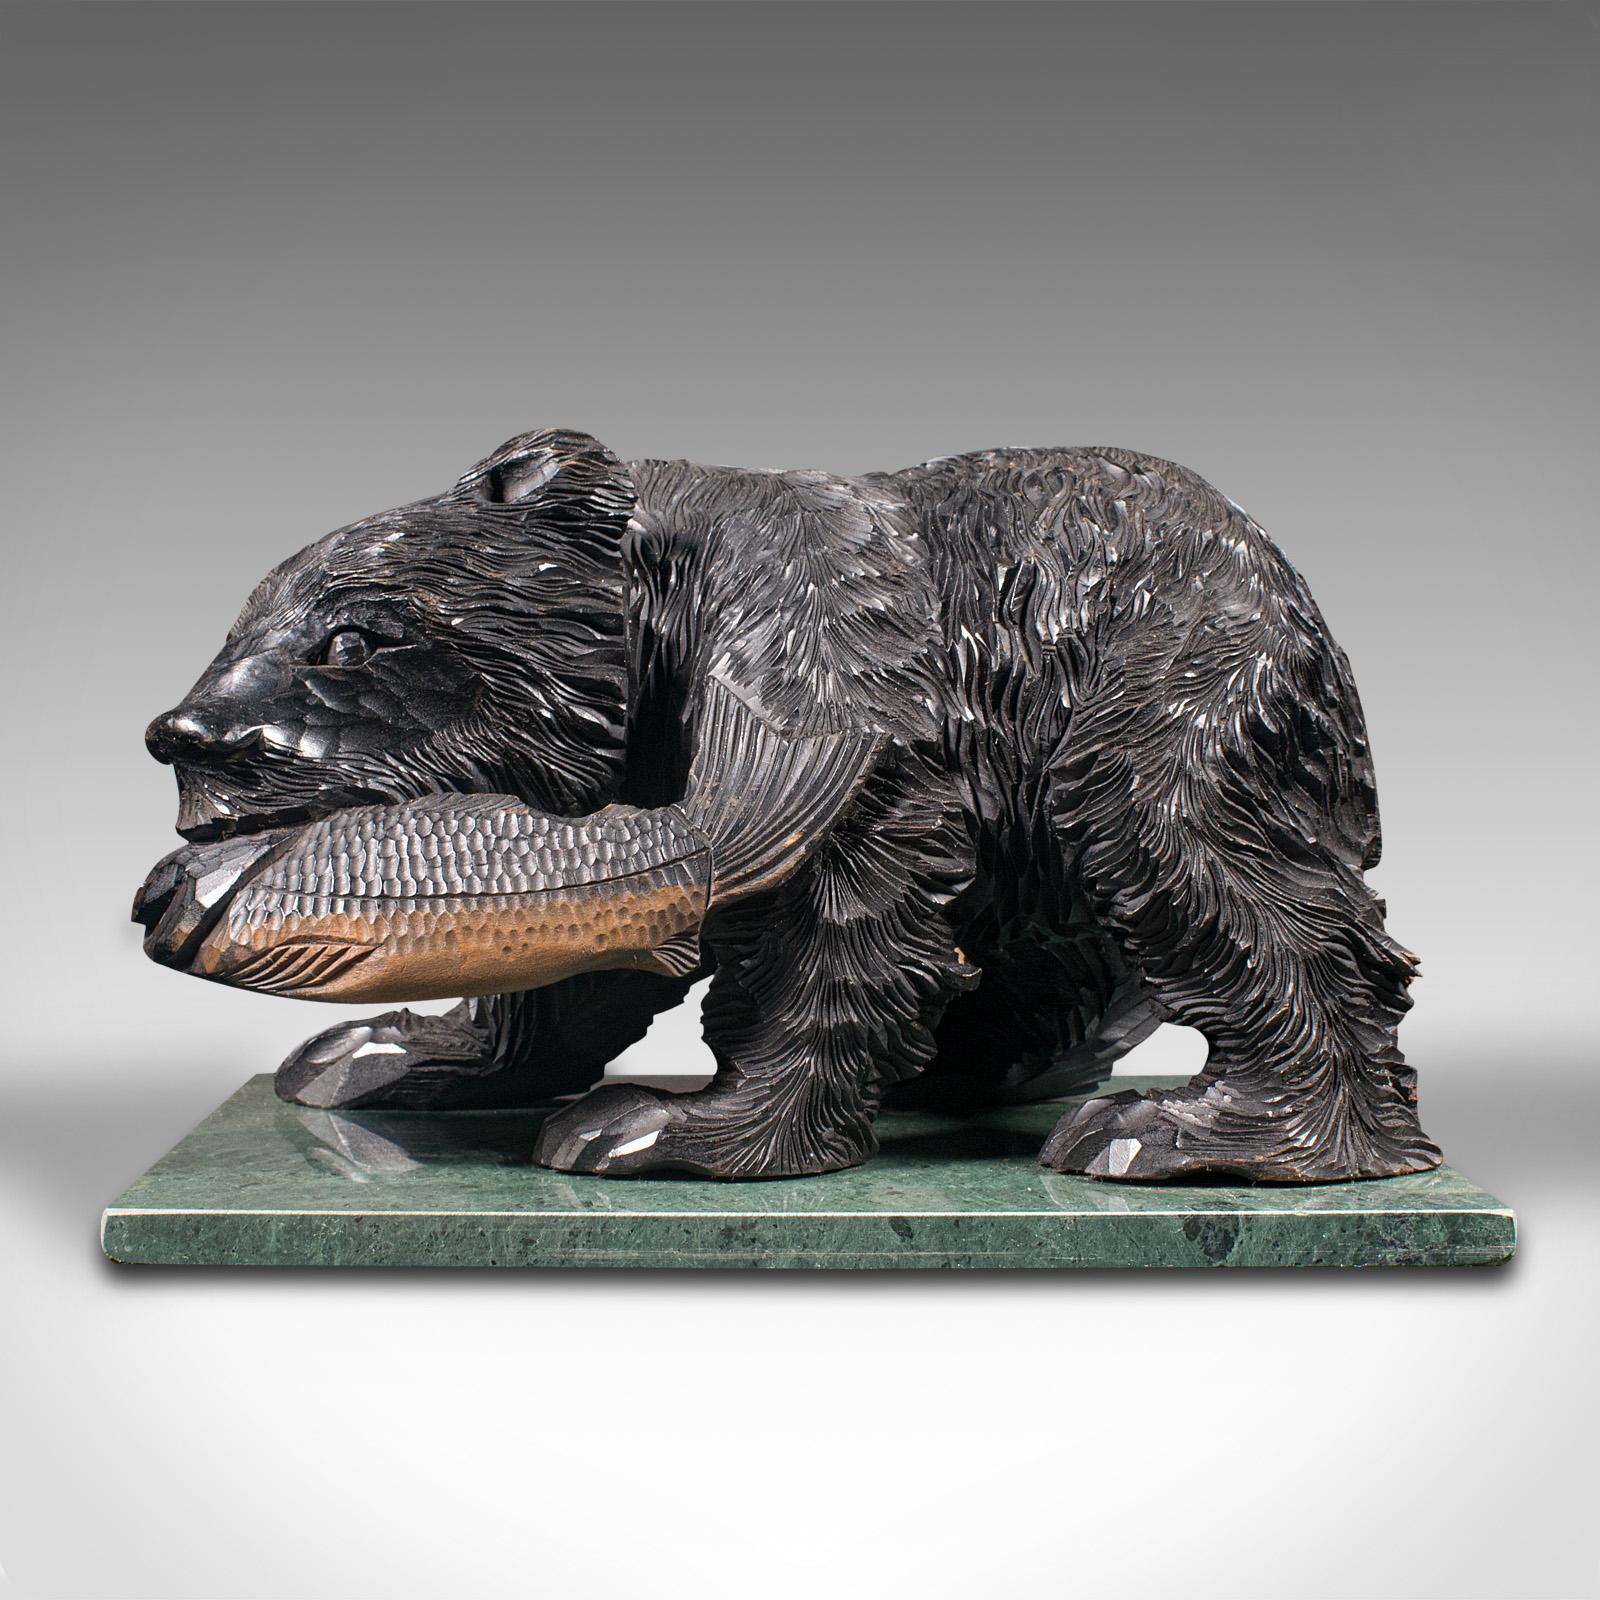 Il s'agit d'une ancienne figurine d'ours décorative. Une étude naturelle allemande en bois fruitier sculpté dans le goût de la Forêt Noire, datant de la fin de la période victorienne, vers 1900.

Étude fascinante, sculptée avec enthousiasme, du